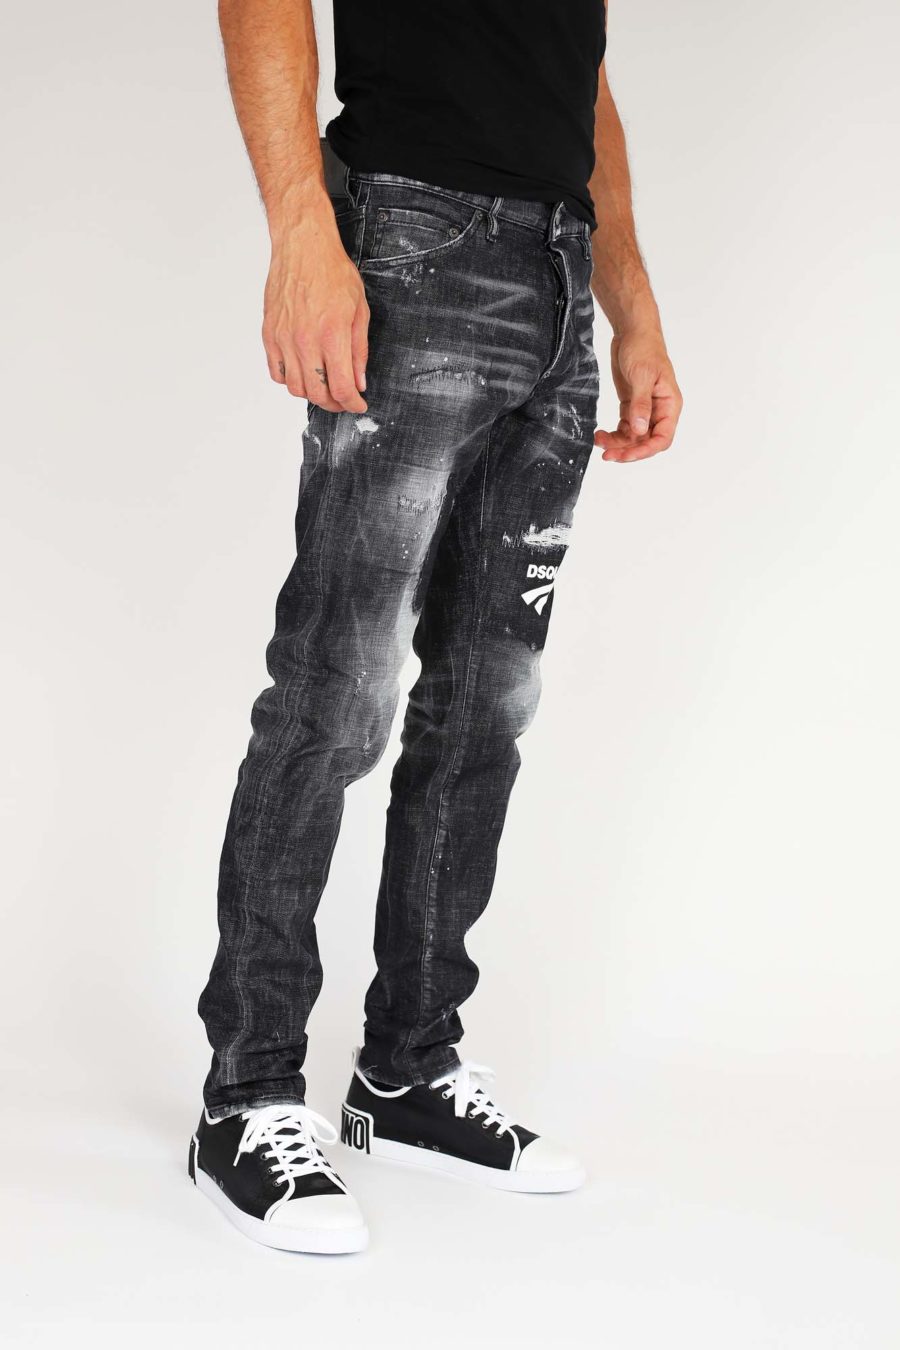 Pantalón cool guy jean negro con logo - IMG 9884